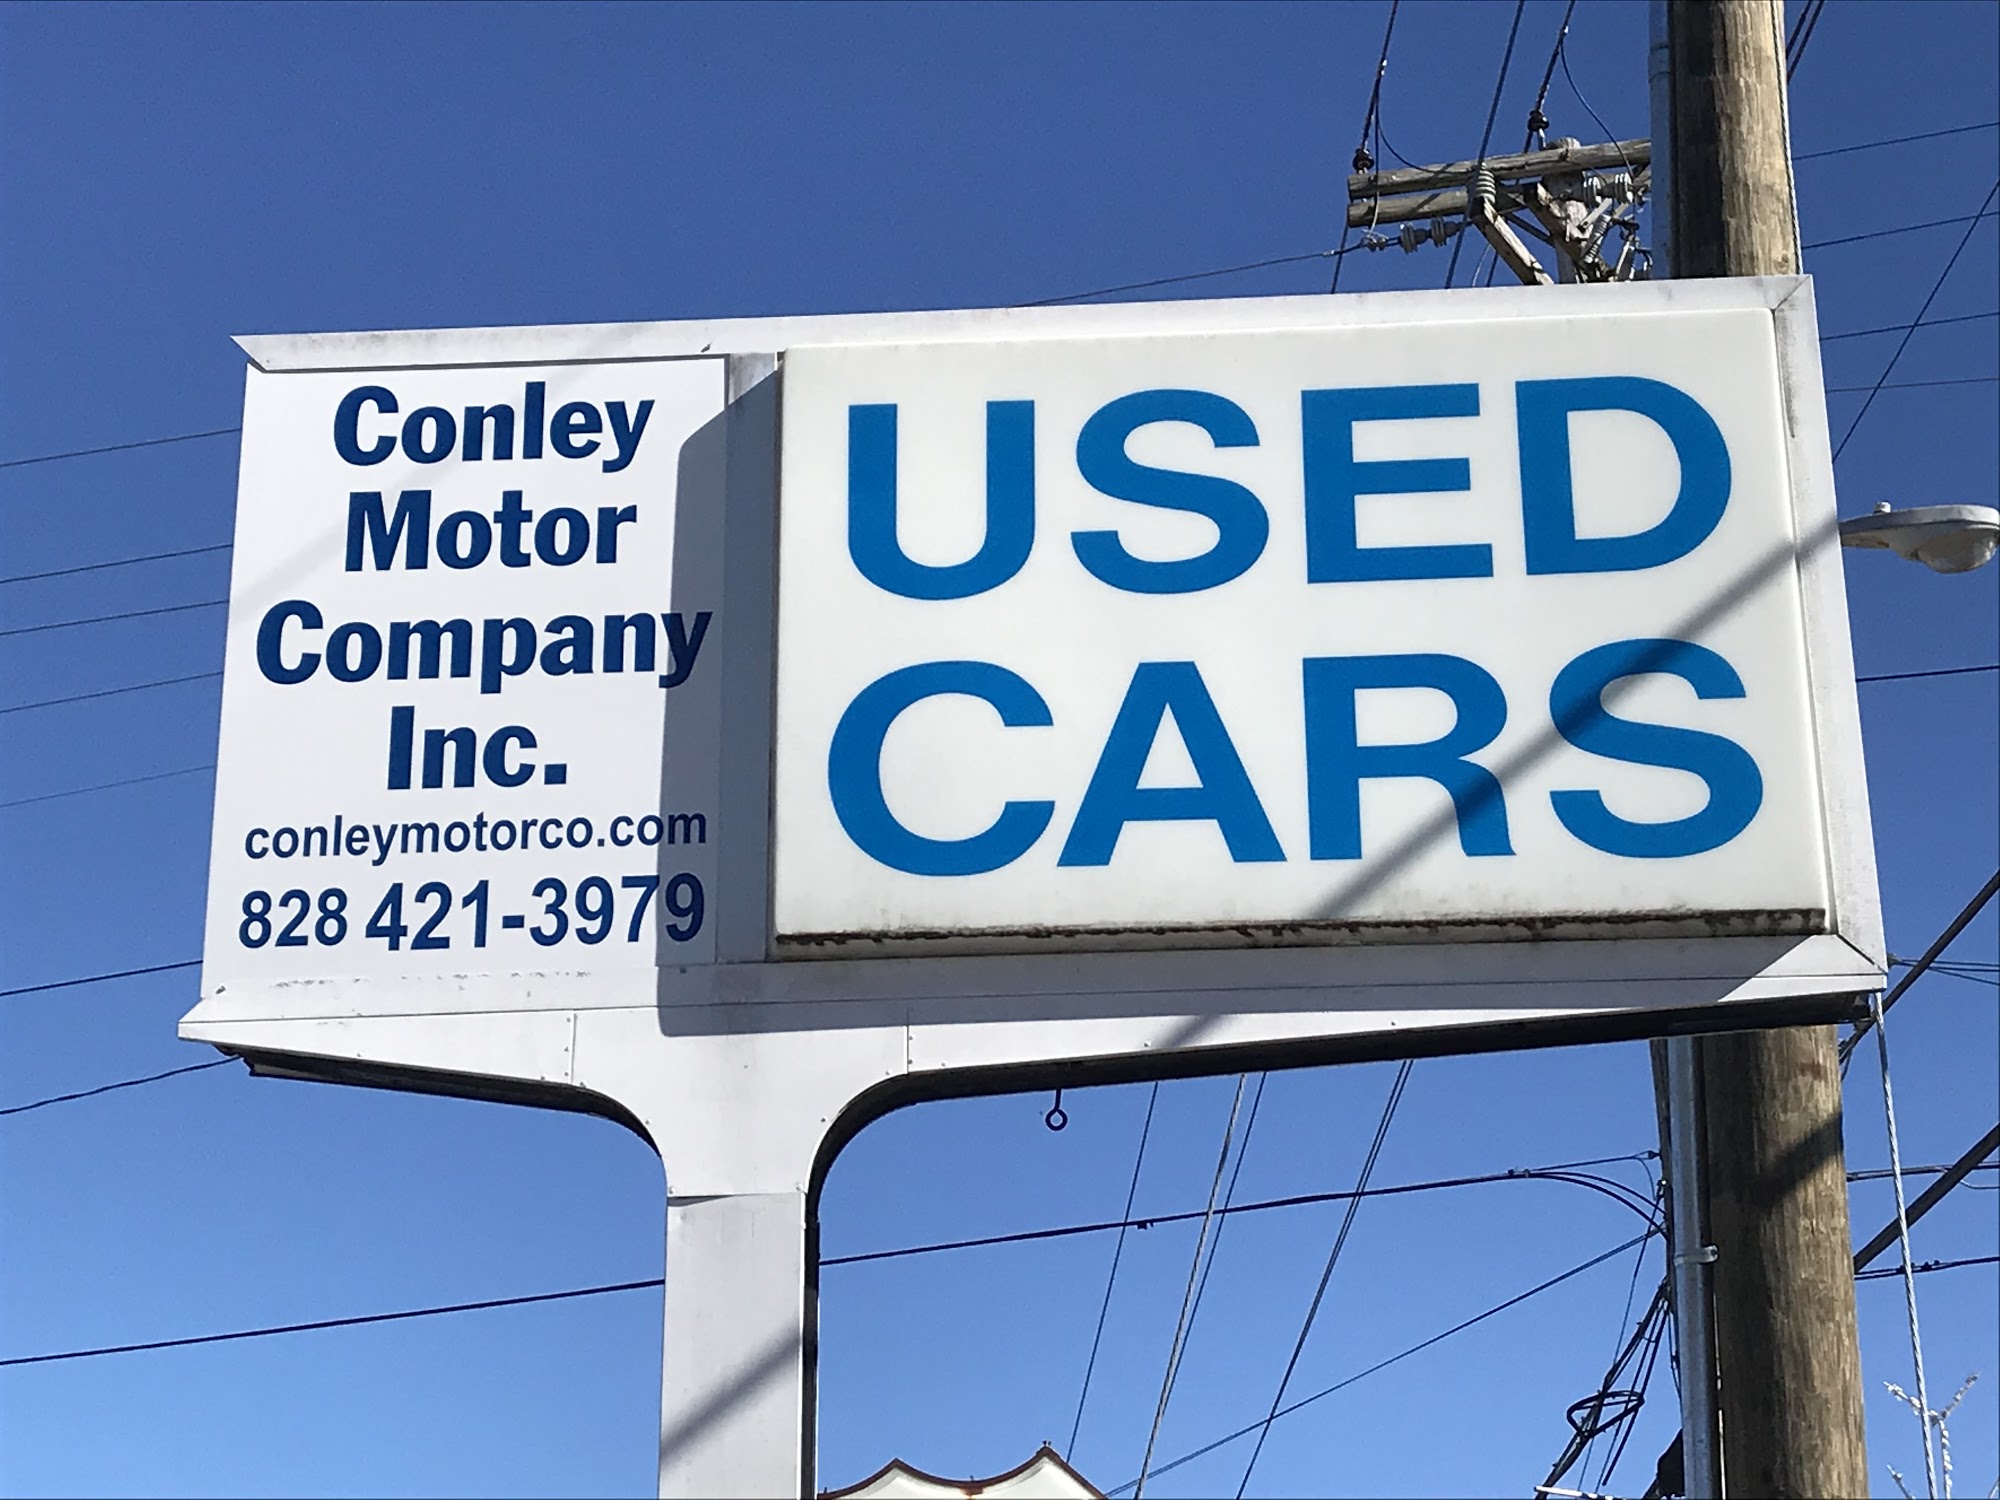 Conley Motor Company Inc.